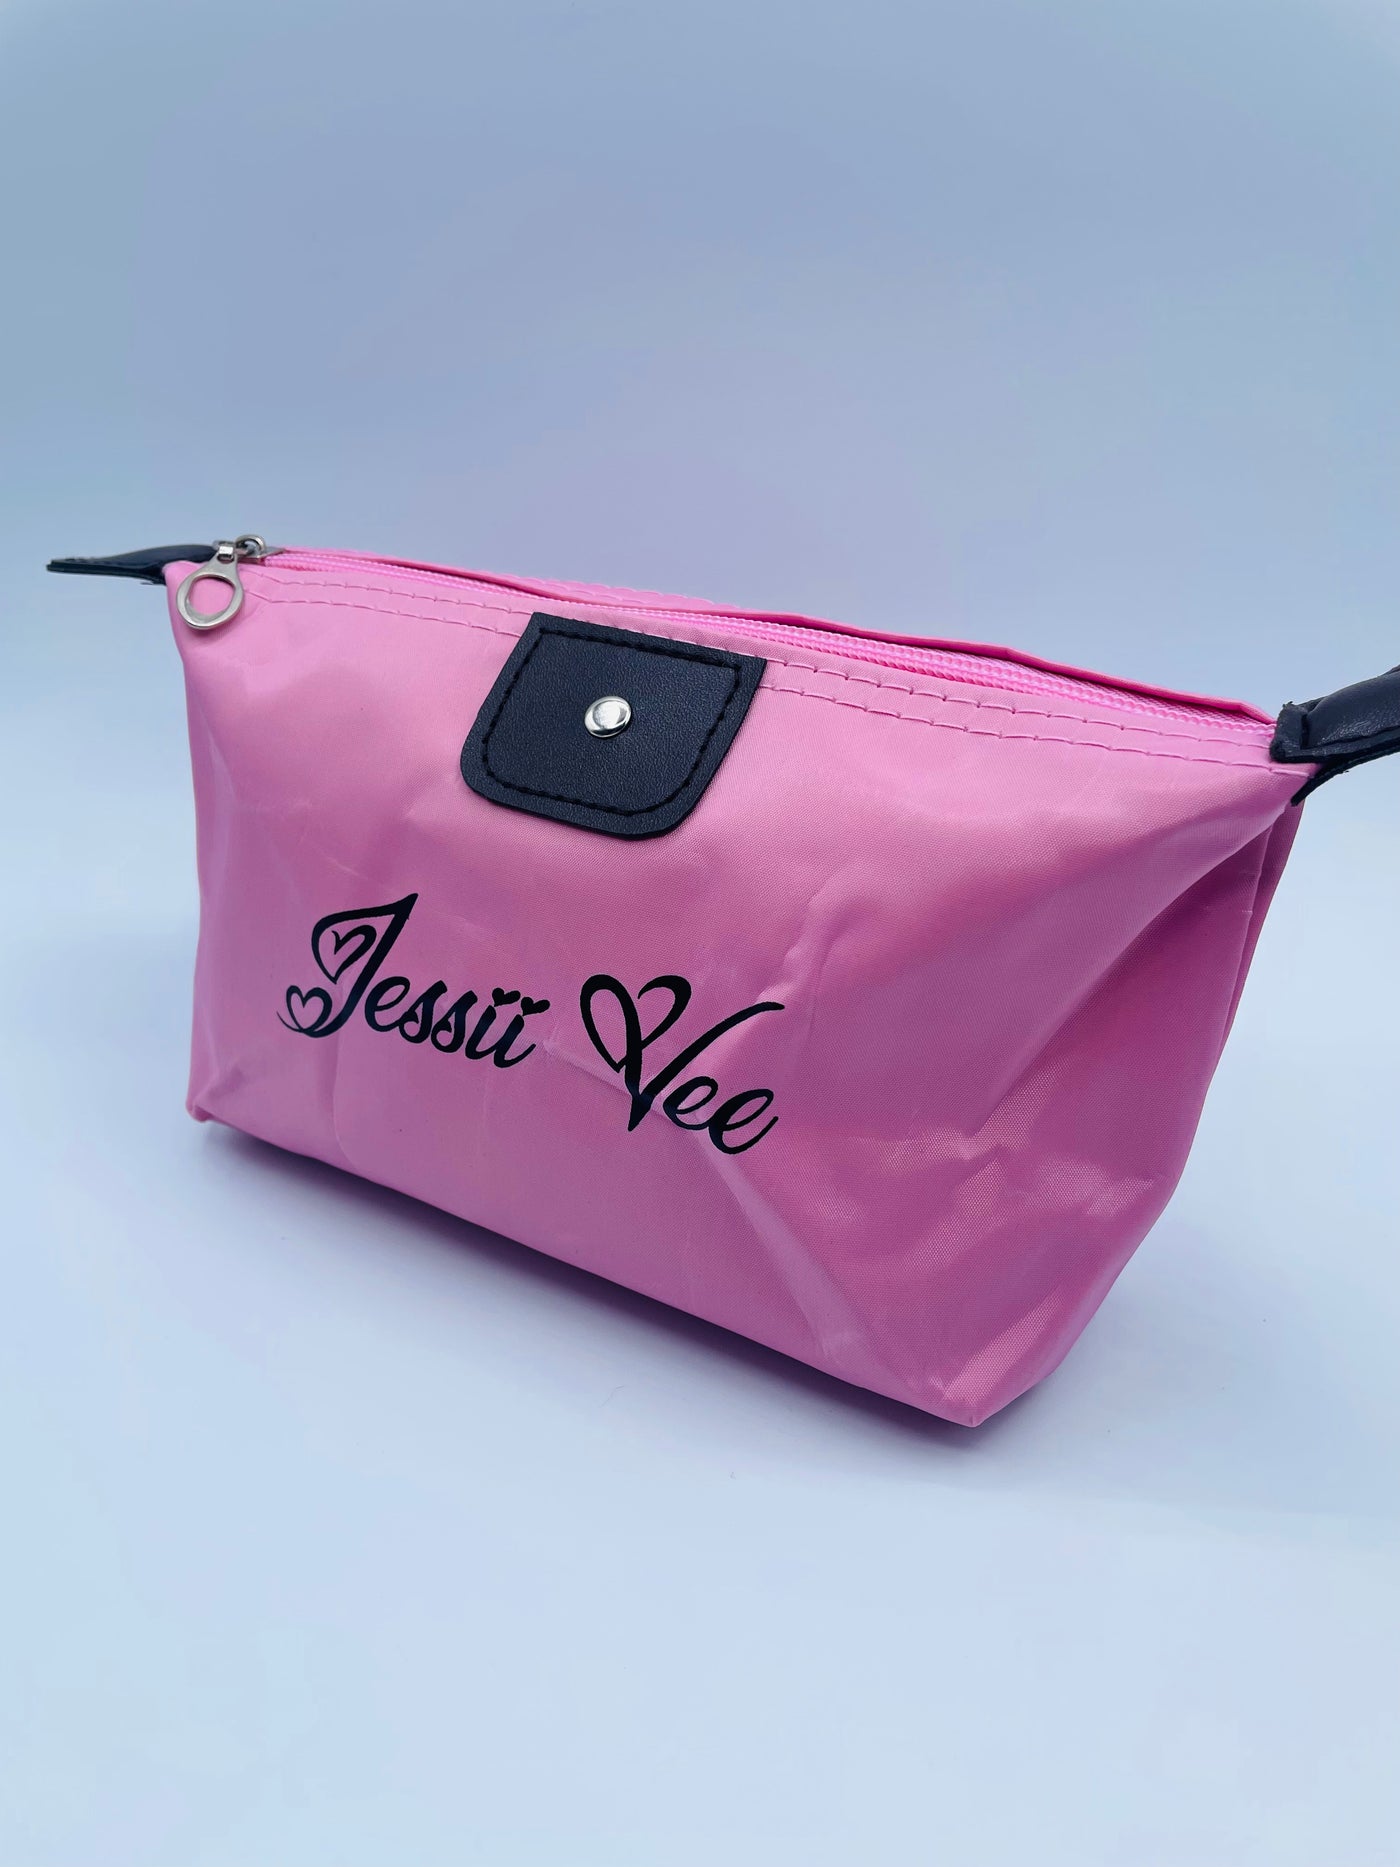 Jessii Vee Designed Make up Bag